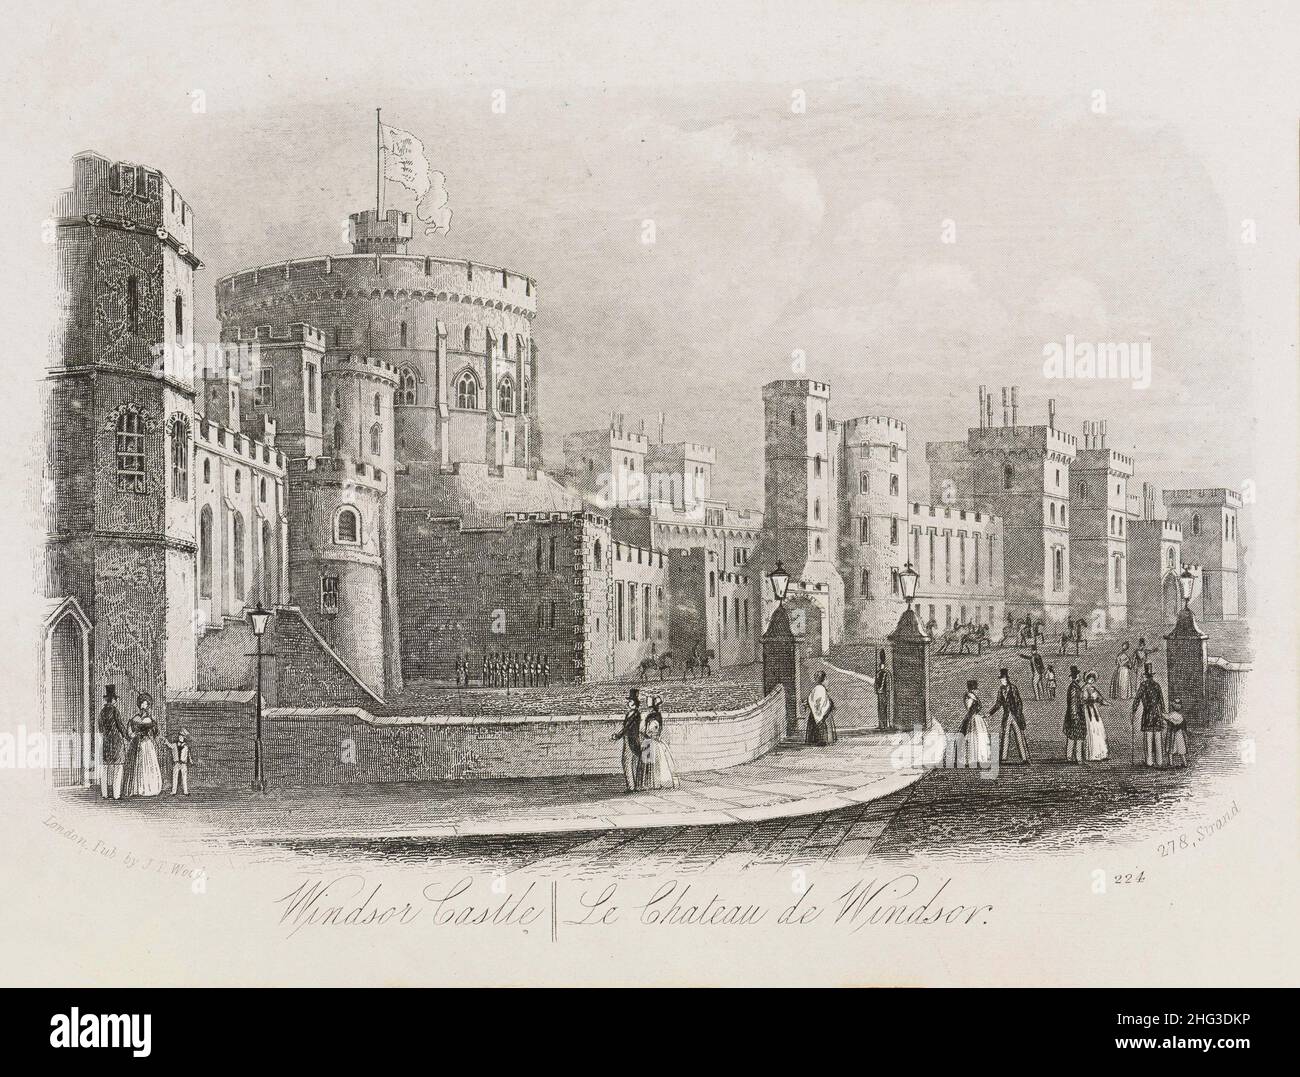 Incisione della vista del Castello di Windsor. Londra, Gran Bretagna. 1862, la guida illustrata di Wood a Londra. Il Castello di Windsor è una residenza reale a Winds Foto Stock